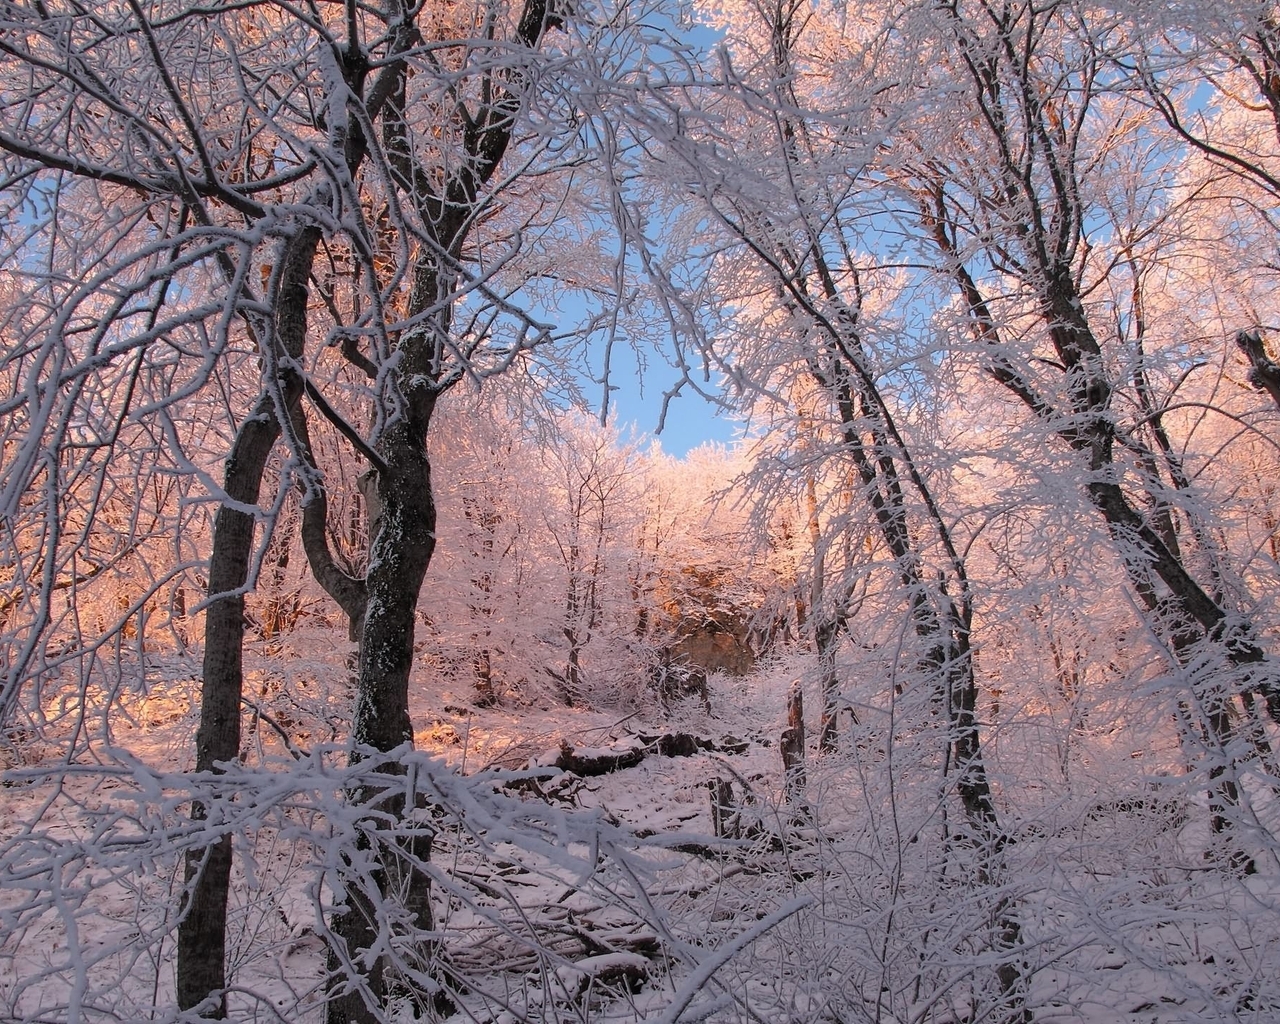 Картинка: Лес, деревья, зима, иней, снег, изморозь